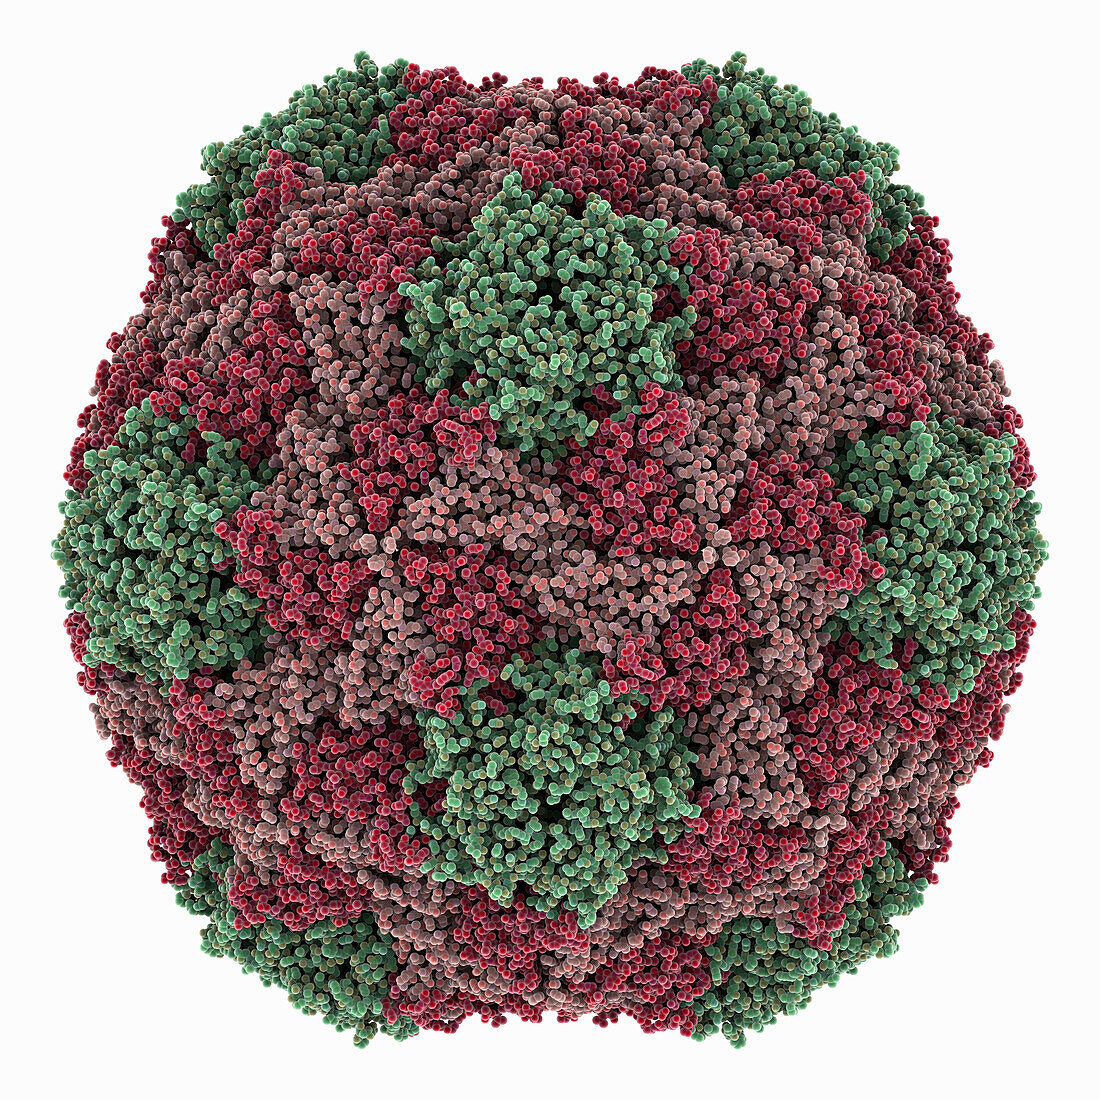 Chaetoceros socialis RNA virus 1 capsid , molecular model